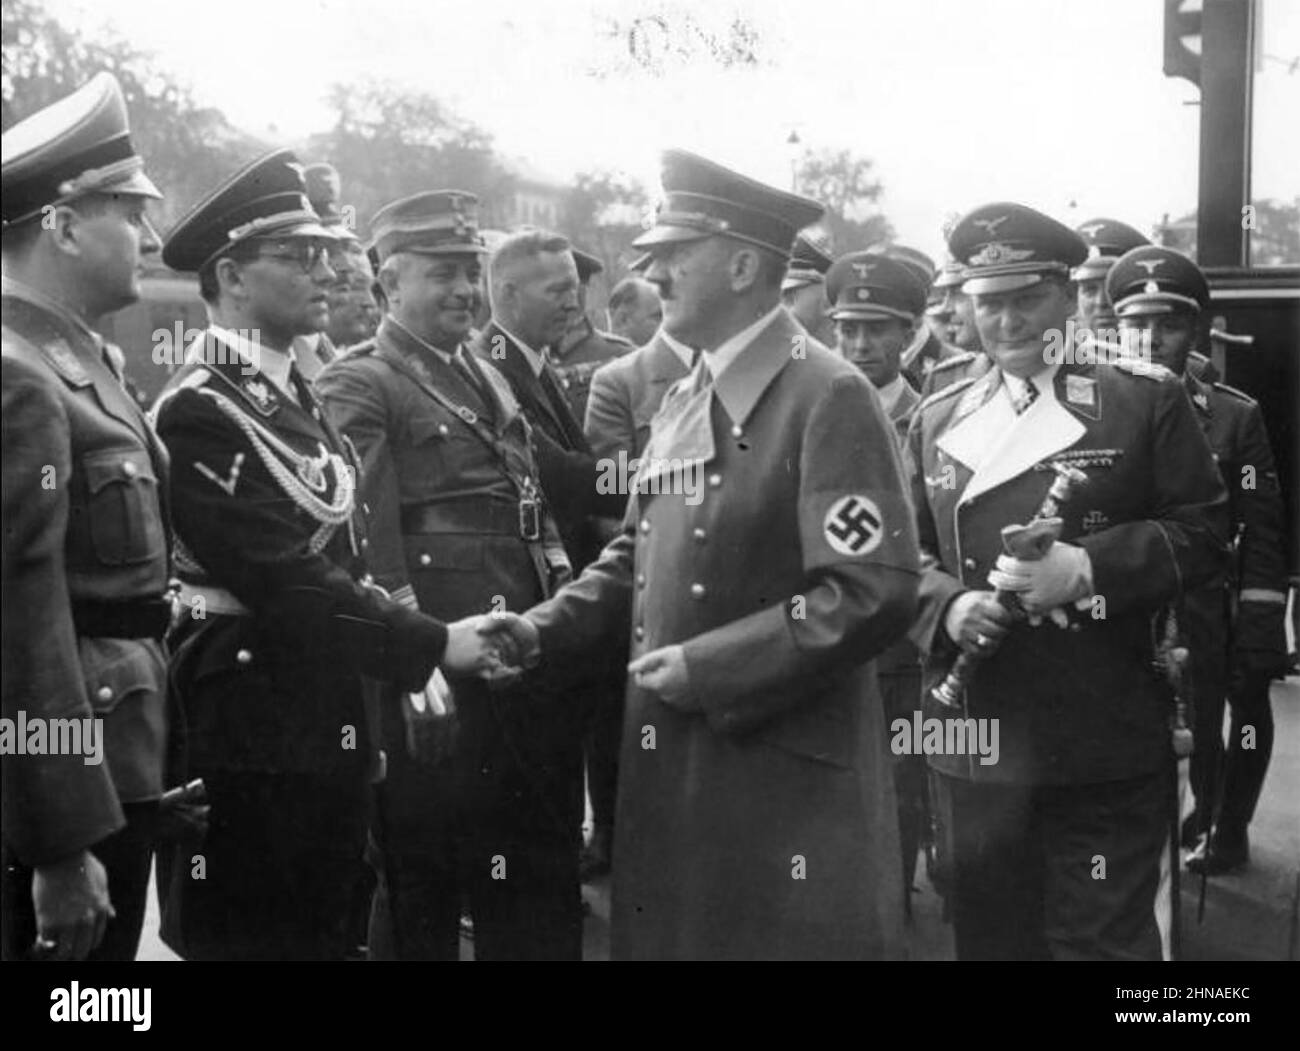 PHILIP BOULER (1899-1945) schüttelt sich mit Hitler die Hände. Hochrangiger Nazi-Parteifunktionär und SS-Mitglied, verantwortlich für die Tötungen der Aktion T4. Goering und Goebbels sind bhind Hitler. Stockfoto